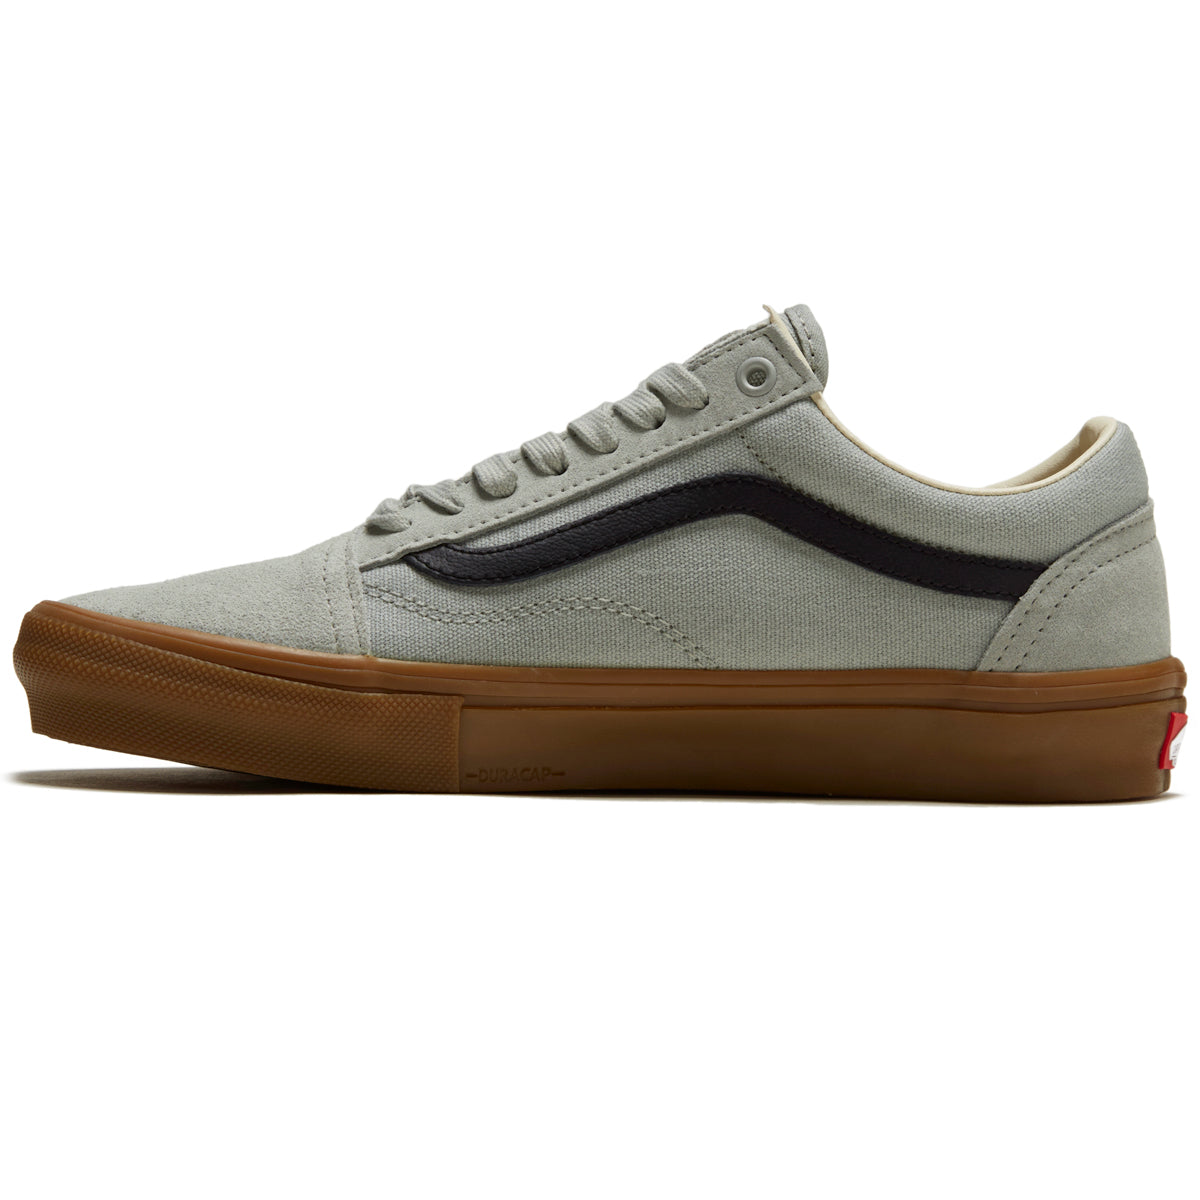 Vans Skate Old Skool Shoes - Grey/Gum image 2